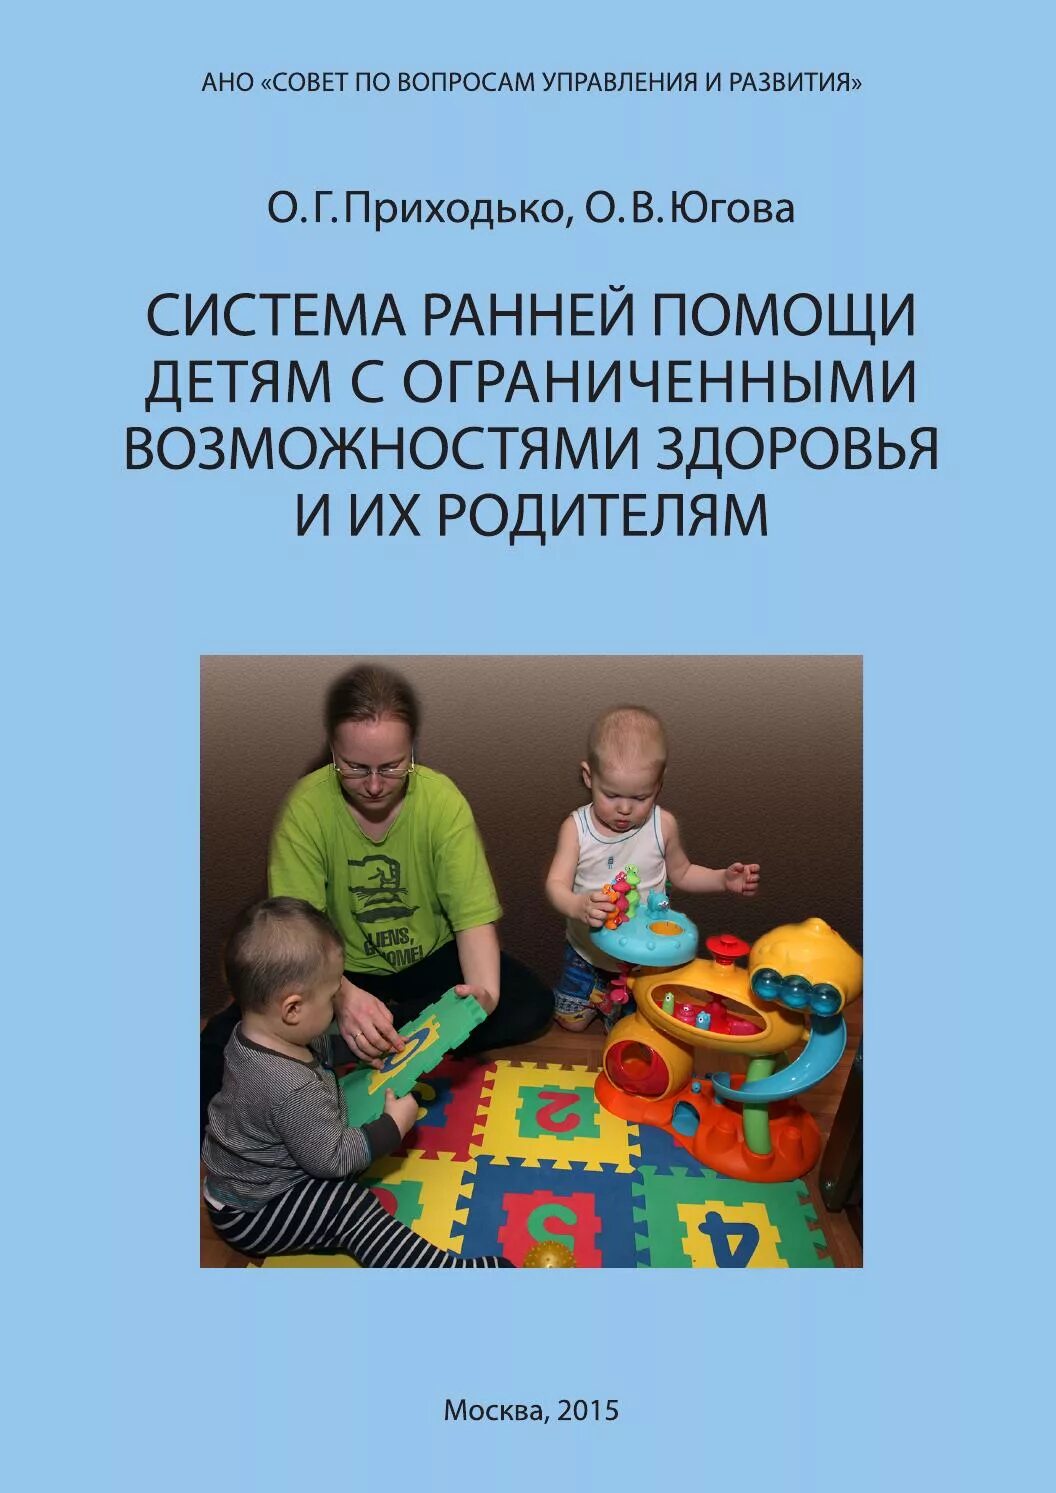 Программа раннего развития детей дошкольного возраста